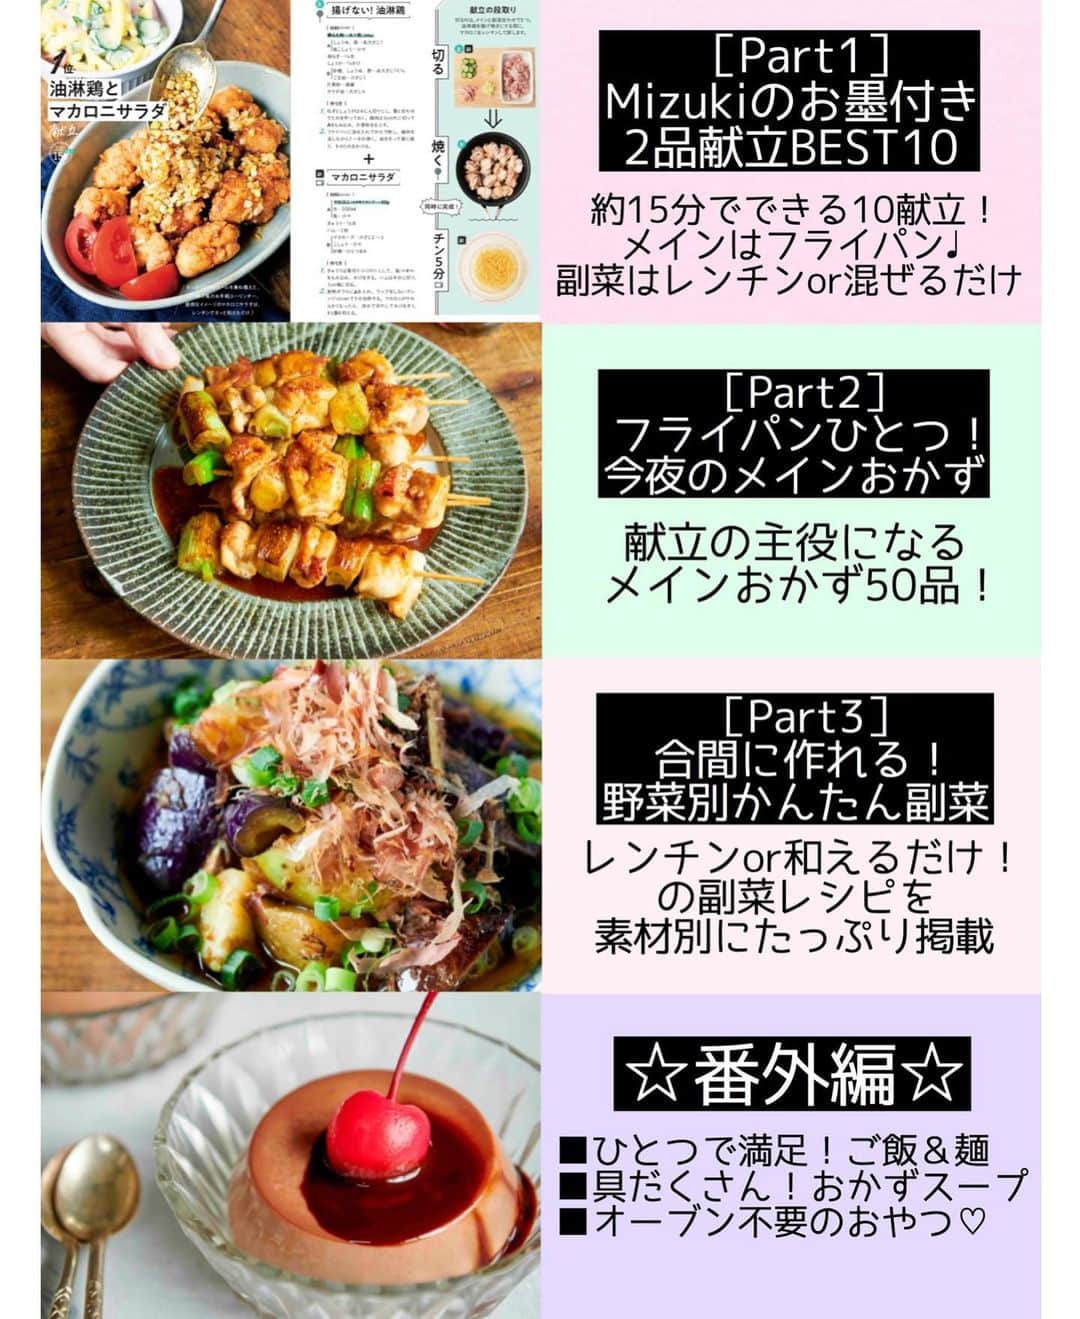 Mizuki【料理ブロガー・簡単レシピ】さんのインスタグラム写真 - (Mizuki【料理ブロガー・簡単レシピ】Instagram)「・﻿ 【#レシピ 】ーーーーーーーーーー﻿ ♡鶏肉とれんこんのバター醤油♡﻿ (2品献立提案あり)﻿ ーーーーーーーーーーーーーーーー﻿ ﻿ ﻿ ﻿ おはようございます(*^^*)﻿ ﻿ 今日はこっくり秋おかず♩﻿ \鶏肉とれんこんのバター醤油/﻿ をご紹介させていただきます♡﻿ ﻿ フライパンこんがり焼いて﻿ バター醤油で味付けしました♡﻿ ジューシーな鶏肉と﻿ シャクシャクのれんこんに﻿ コクのあるたれがよく合いますよ〜♩﻿ ﻿ しっかり食べ応えもあるので﻿ よかったらお試し下さいね(*^^*)﻿ ﻿ ﻿ ﻿ ＿＿＿＿＿＿＿＿＿＿＿＿＿＿＿＿＿＿＿＿﻿ 【2人分】﻿ 鶏もも肉...1枚(250g)﻿ れんこん...小1節(150g)﻿ 塩こしょう...少々﻿ 薄力粉...適量﻿ サラダ油...大1﻿ ●酒・みりん・醤油...各大1﻿ ●バター...10g﻿ (あれば)万能ねぎ...適量﻿ ﻿ 1.鶏肉は3cm大に切り、塩こしょうを振って薄力粉をまぶす。れんこんは8mm厚さの輪切り(大きければ半月切り)にし、水に3分晒して水気を切る。﻿ 2.フライパンにサラダ油を中火で熱し、1を並べて焼く。焼き色が付いたら裏返し、フタをして弱めの中火で3分蒸し焼きにする。﻿ 3.火が通ったら●を加えて煮からめ、小口切りにしたねぎをトッピングする。﻿ ￣￣￣￣￣￣￣￣￣￣￣￣￣￣￣￣￣￣￣￣﻿ ﻿ ﻿ ﻿ 《ポイント》﻿ ♦︎生焼けを防ぐ為、鶏肉はしっかり焼き色が付いてから裏返して下さい♩﻿ ﻿ ﻿ ﻿ ﻿ ﻿ ＿＿＿＿＿＿＿＿＿＿＿＿＿＿＿﻿ 🥣🥣🥣2品献立提案🥣🥣🥣﻿ ￣￣￣￣￣￣￣￣￣￣￣￣￣￣￣﻿ 【合間に作れるおすすめ副菜】﻿ >玉ねぎと厚揚げの煮物(P.92)﻿ >人参マカロニサラダ(P.89)﻿ (#Mizukiの2品献立 より)﻿ ﻿ 【献立の段取り】﻿ 副菜をレンジに入れてからメインを焼く🥢﻿ ﻿ ﻿ ﻿ ﻿ ﻿ 【⭐️発売中⭐️】﻿ _____________________________________﻿ \15分でいただきます/﻿ 📕#Mizukiの2品献立 📕﻿ (9月24日発売・マガジンハウス)﻿ ￣￣￣￣￣￣￣￣￣￣￣￣￣￣￣￣￣﻿ ﻿ 忙しい私たちには﻿ 2品くらいがちょうどいい！﻿ 『しんどくない献立、考えました』﻿ ￣￣￣￣￣￣￣￣￣￣￣￣￣￣￣￣﻿ ﻿ ーーーーーPART.1 ーーーーー﻿ 【Mizukiのお墨つき！２品献立ベスト10】﻿ 約15分でできる10献立をご紹介！﻿ メインは全部フライパン、副菜はレンチンor混ぜるだけ♡﻿ ﻿ ーーーーーPART.2 ーーーーー﻿ 【フライパンひとつ！今夜のメインおかず】﻿ 献立の主役になる肉や魚のおかず50品！﻿ Part3の副菜と組み合わせれば﻿ 献立のバリエーションが広がりますよ♩﻿ ﻿ ーーーーー PART.3 ーーーーー﻿ 【合間に作れる！ 野菜別かんたん副菜】﻿ レンチンor和えるだけの副菜レシピを﻿ 素材別にたっぷり収録♩﻿ ﻿ ーーーーー番外編ーーーーー﻿ 【ひとつで満足！ご飯＆麺】﻿ 【具だくさん！おかずスープ】﻿ 【オーブンいらずのおやつレシピ】﻿ ￣￣￣￣￣￣￣￣￣￣￣￣￣￣￣￣￣￣﻿ (ハイライトにリンク🔗あります💗)﻿ ﻿ ﻿ ﻿ ﻿ ﻿ ﻿ ﻿ ￣￣￣￣￣￣￣￣￣￣￣￣￣￣￣￣￣￣﻿ レシピを作って下さった際や﻿ レシピ本についてのご投稿には﻿ タグ付け( @mizuki_31cafe )して﻿ お知らせいただけると嬉しいです😊💕﻿ ﻿ ﻿ ﻿ ﻿ ﻿ #鶏肉#れんこん#秋#バター醤油#Mizuki#簡単レシピ#時短レシピ#節約レシピ#料理#フーディーテーブル#マカロニメイト#おうちごはん#デリスタグラマー#料理好きな人と繋がりたい#食べ物#料理記録#おうちごはんlover#写真好きな人と繋がりたい#foodpic#cooking#recipe#lin_stagrammer#foodporn#yummy#f52grams#鶏肉とれんこんのバター醤油m」9月28日 7時23分 - mizuki_31cafe